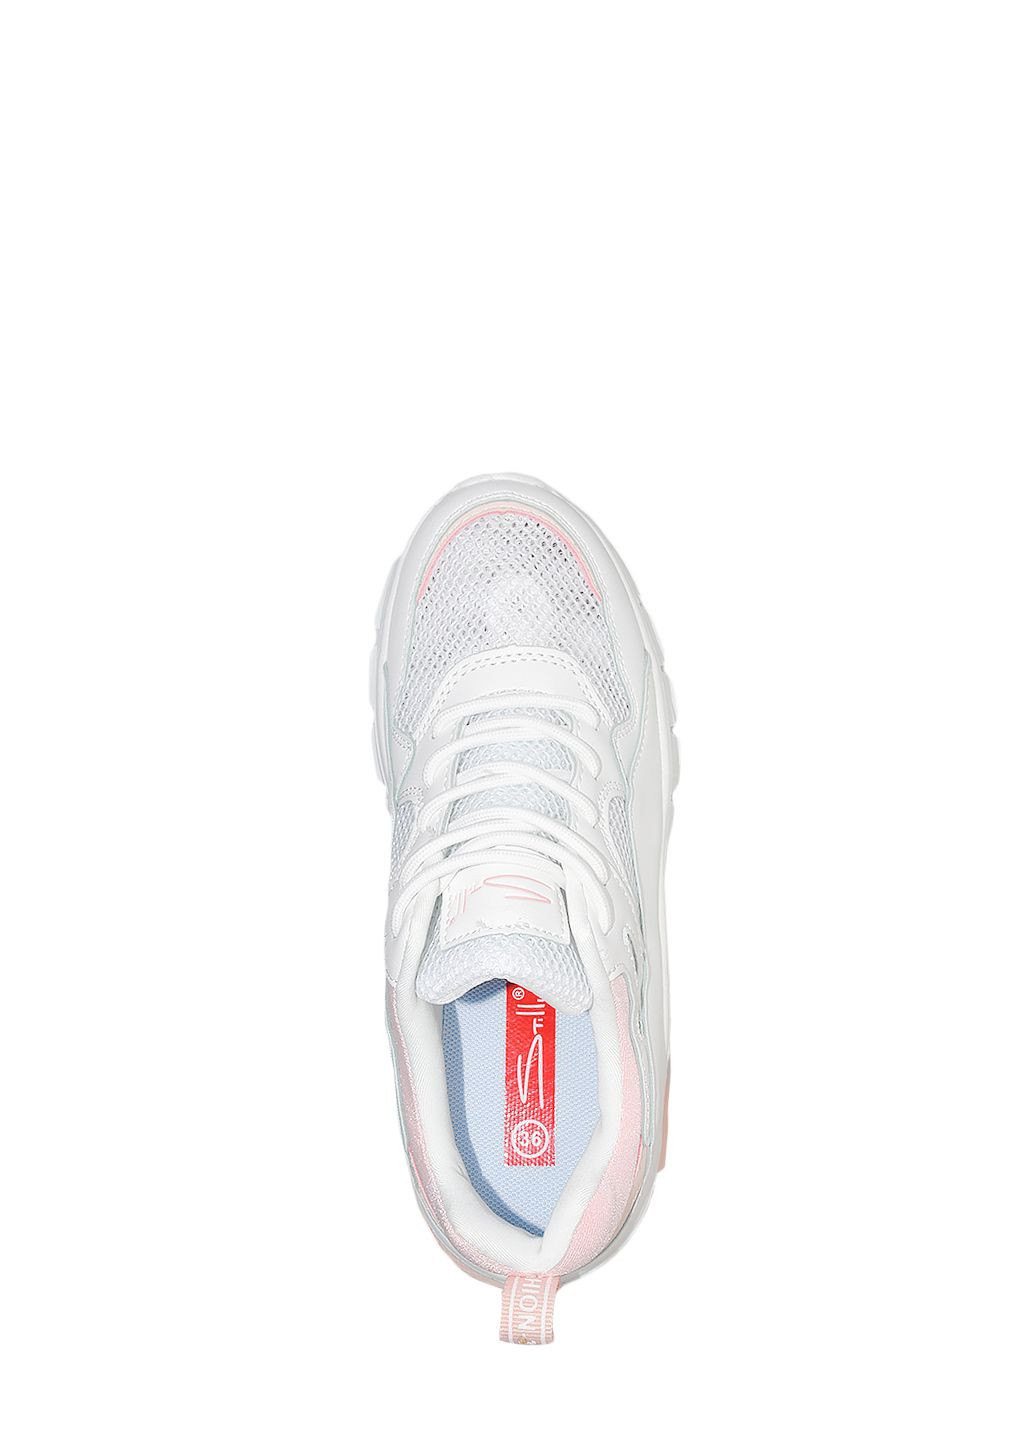 Белые демисезонные кроссовки st3600-8 white-pink Stilli